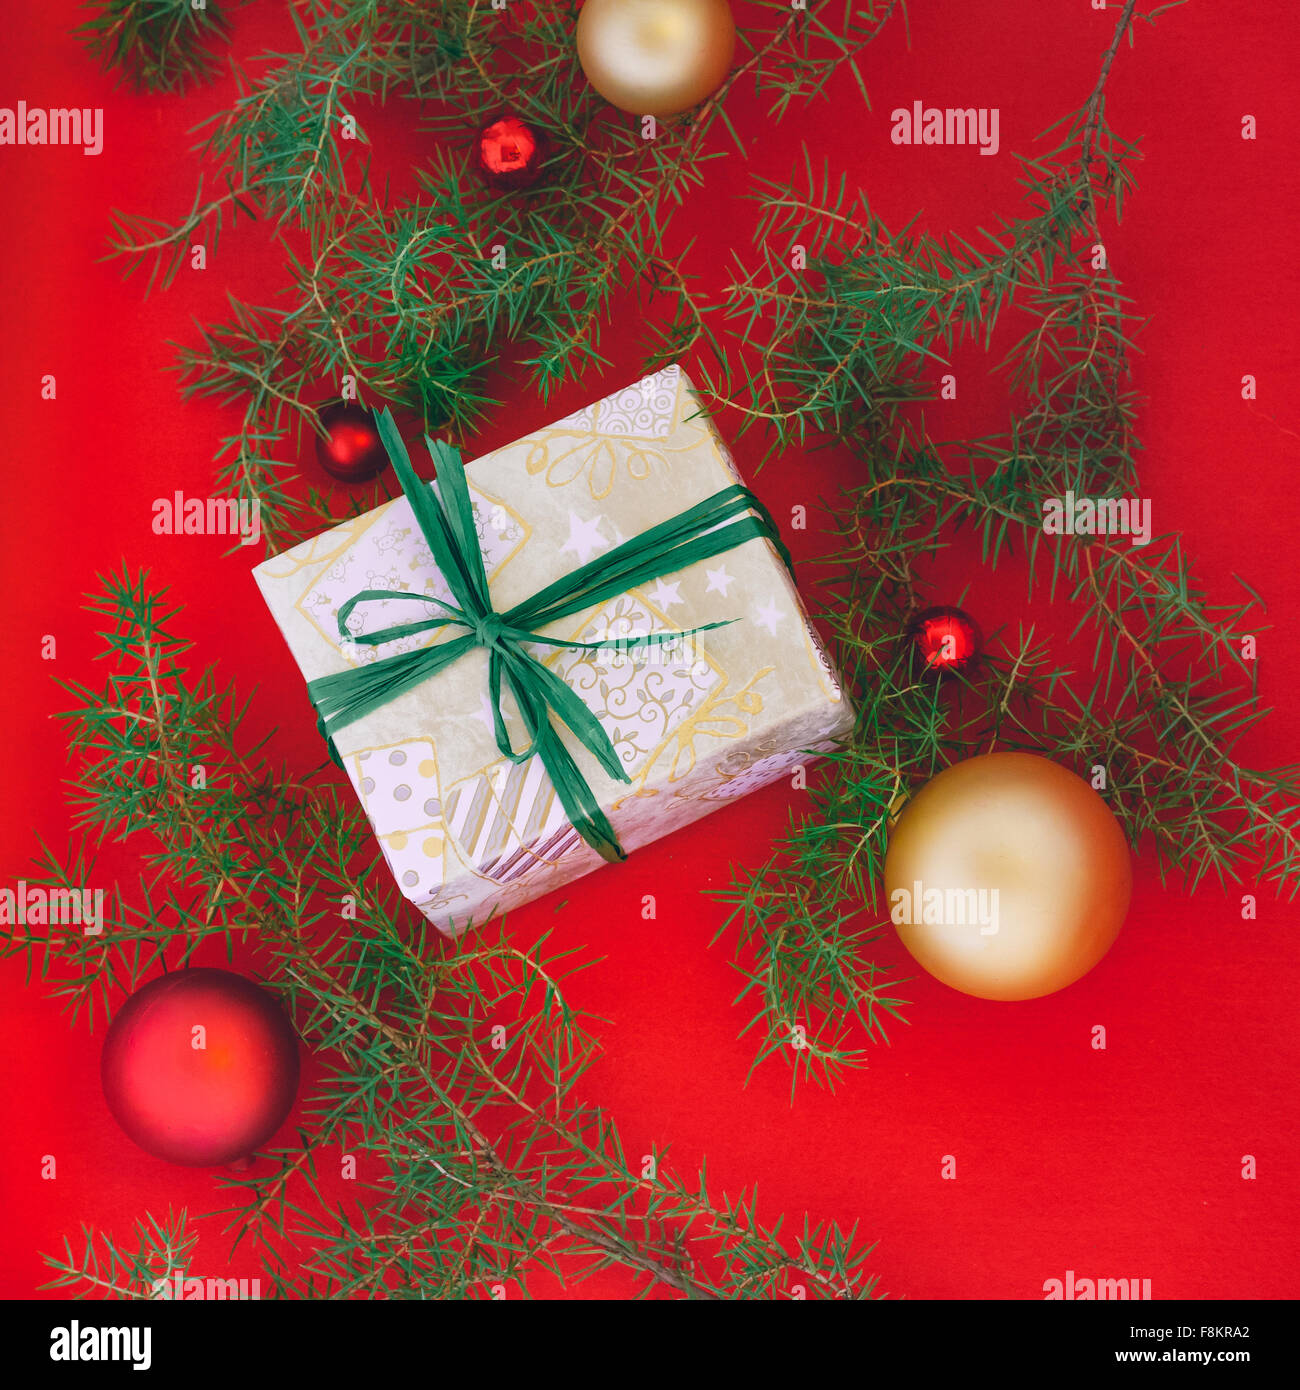 Hand wrapped christmas gift avec ruban vert à fond rouge avec des jouets de Noël Banque D'Images